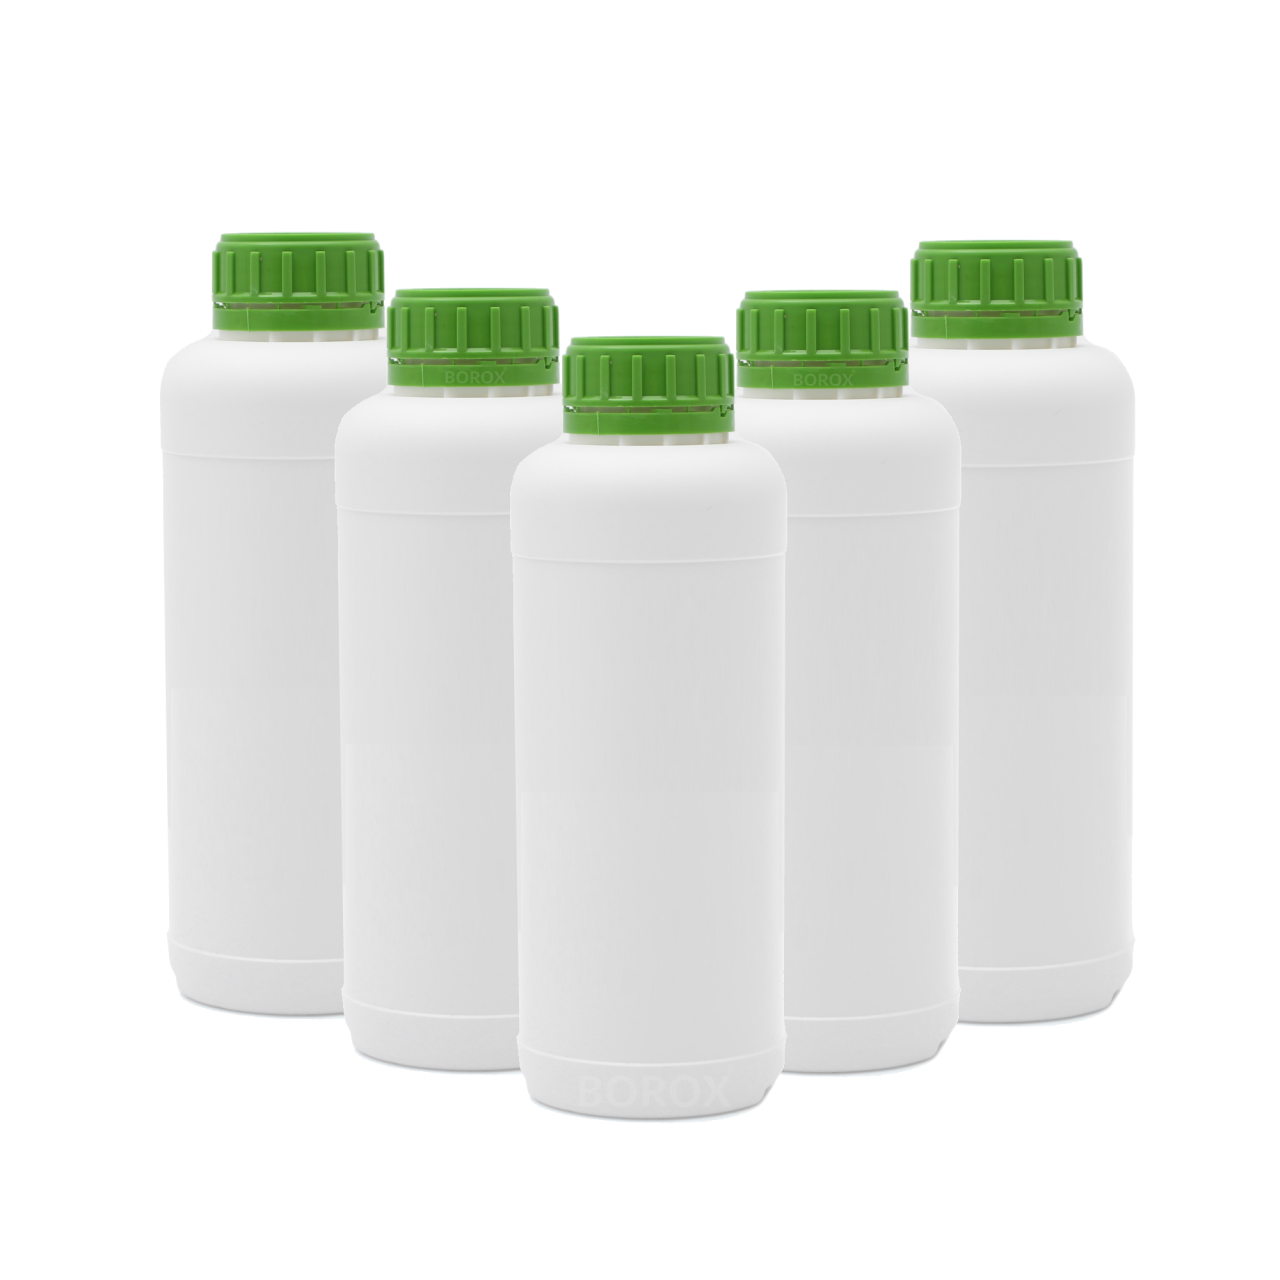 Borox Plastik Yuvarlak Şişe 1000 ml - Yeşil Kapaklı 5 Adet